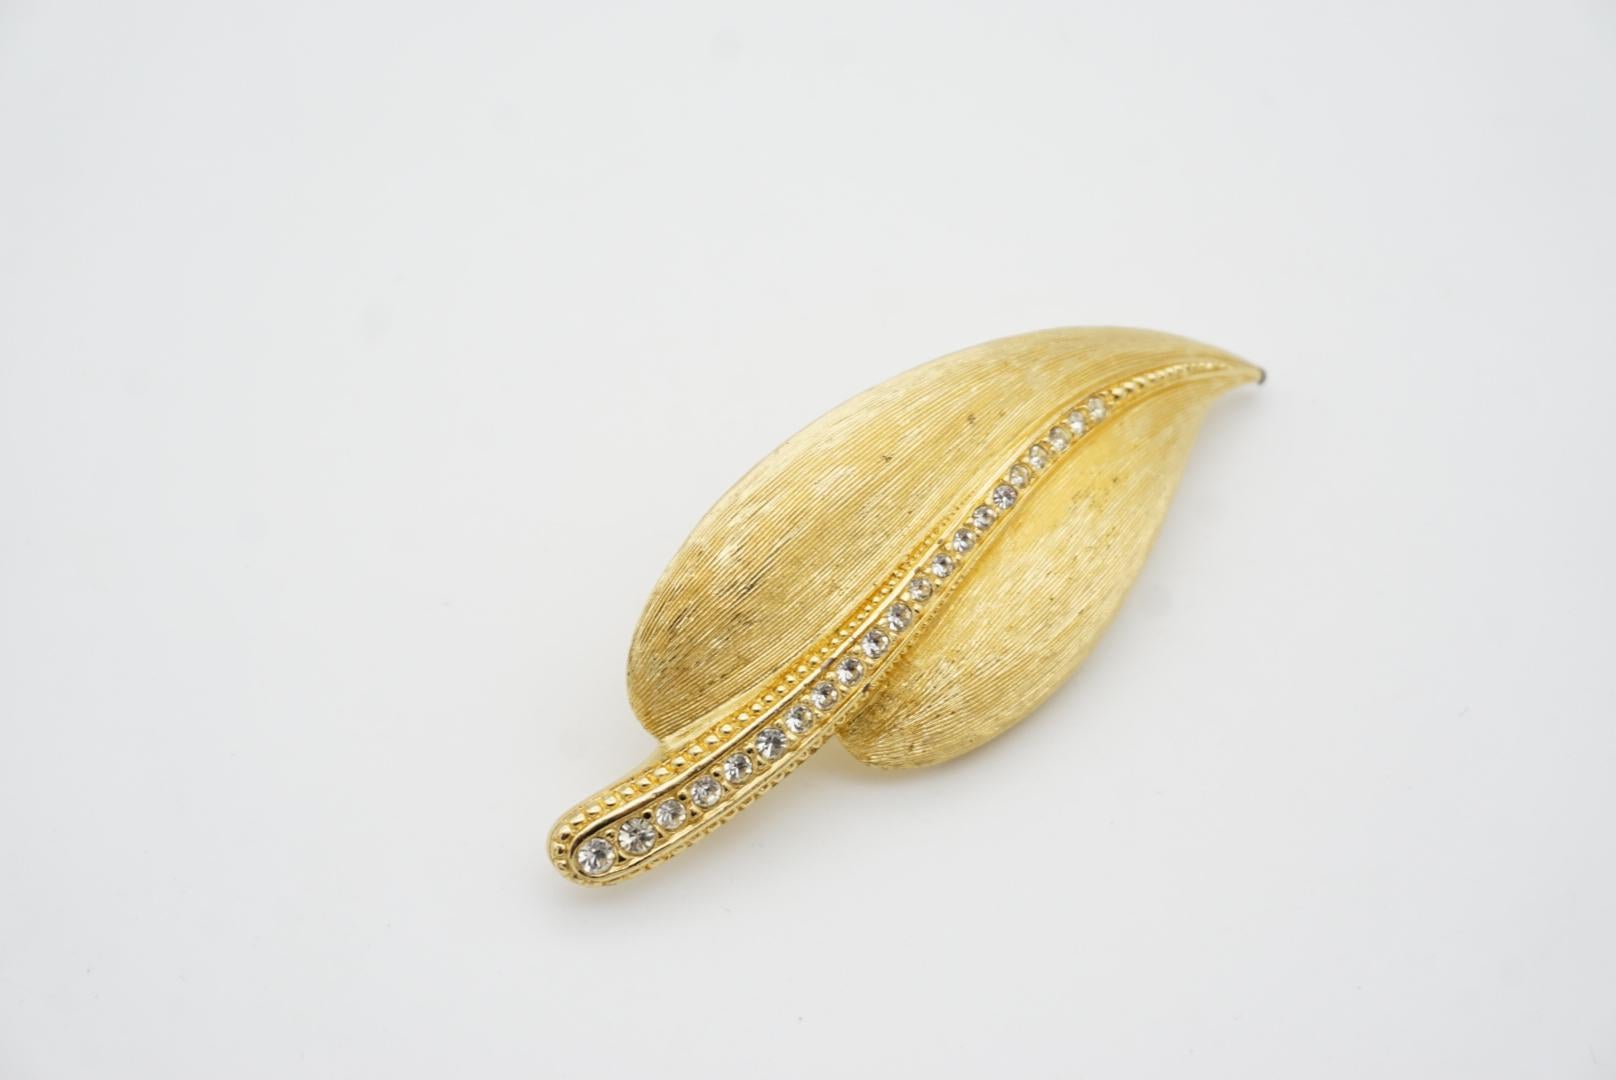 Christian Dior 1980s Vintage Large Wavy Swarovski Crystals Gold Palm Leaf Brooch For Sale 3